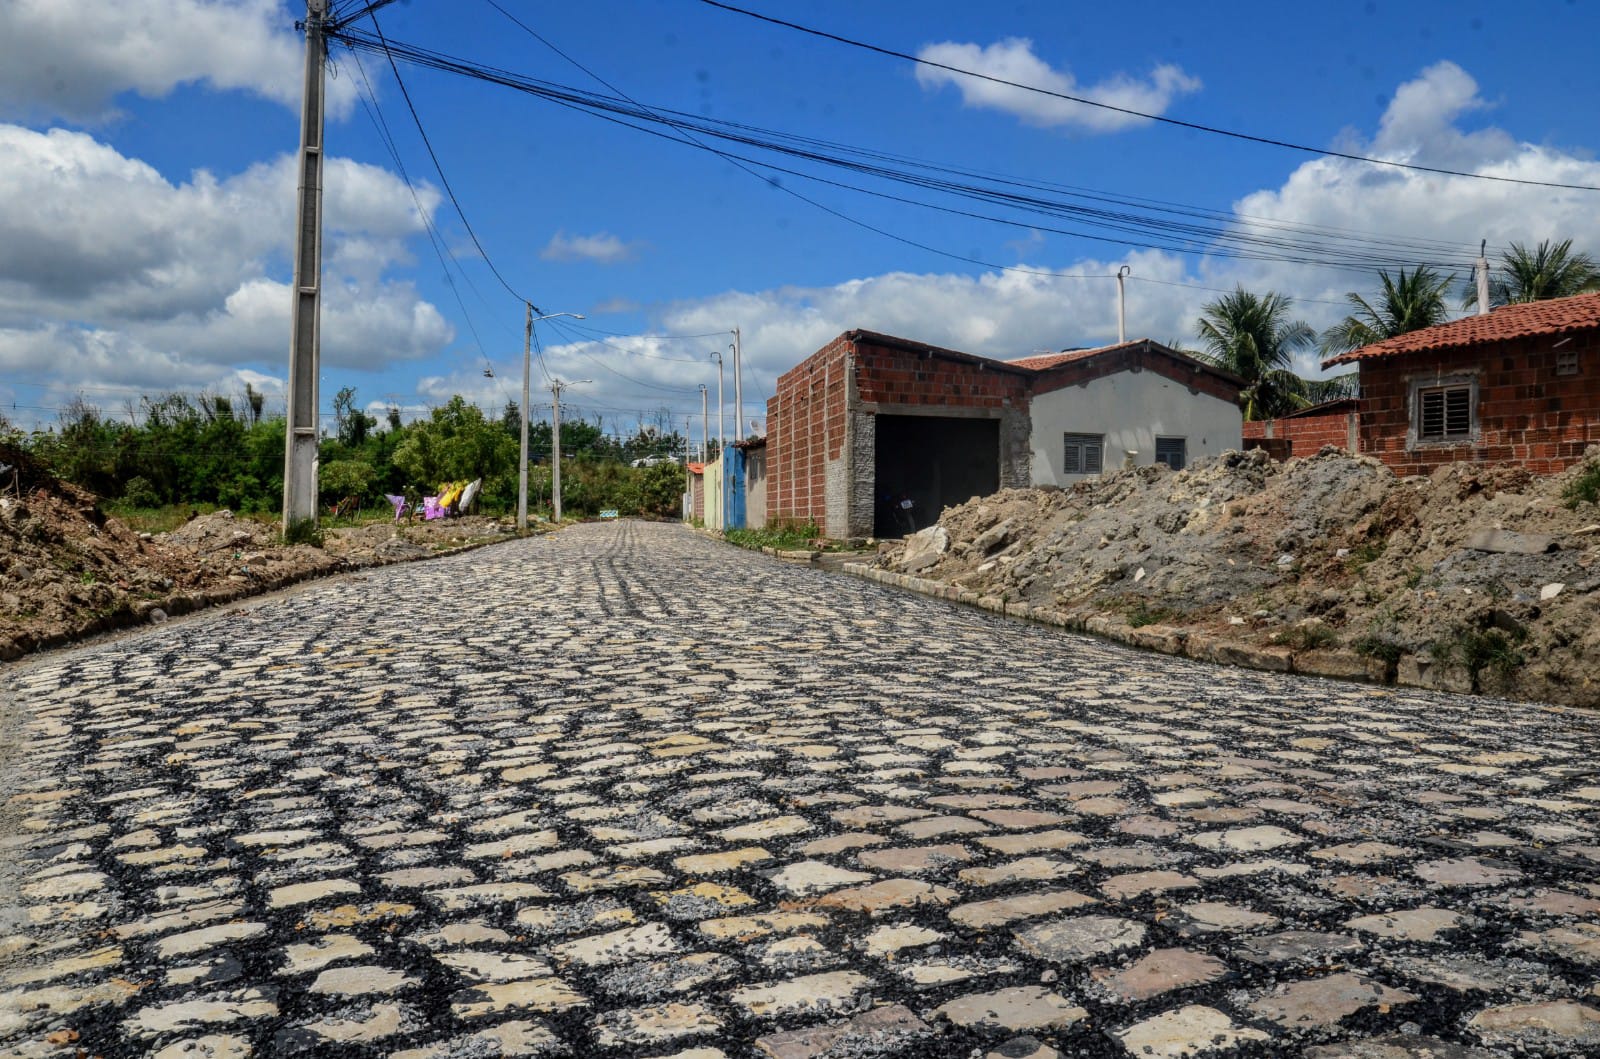 Operação tapa-buracos segue em andamento nas ruas da comunidade Pintos